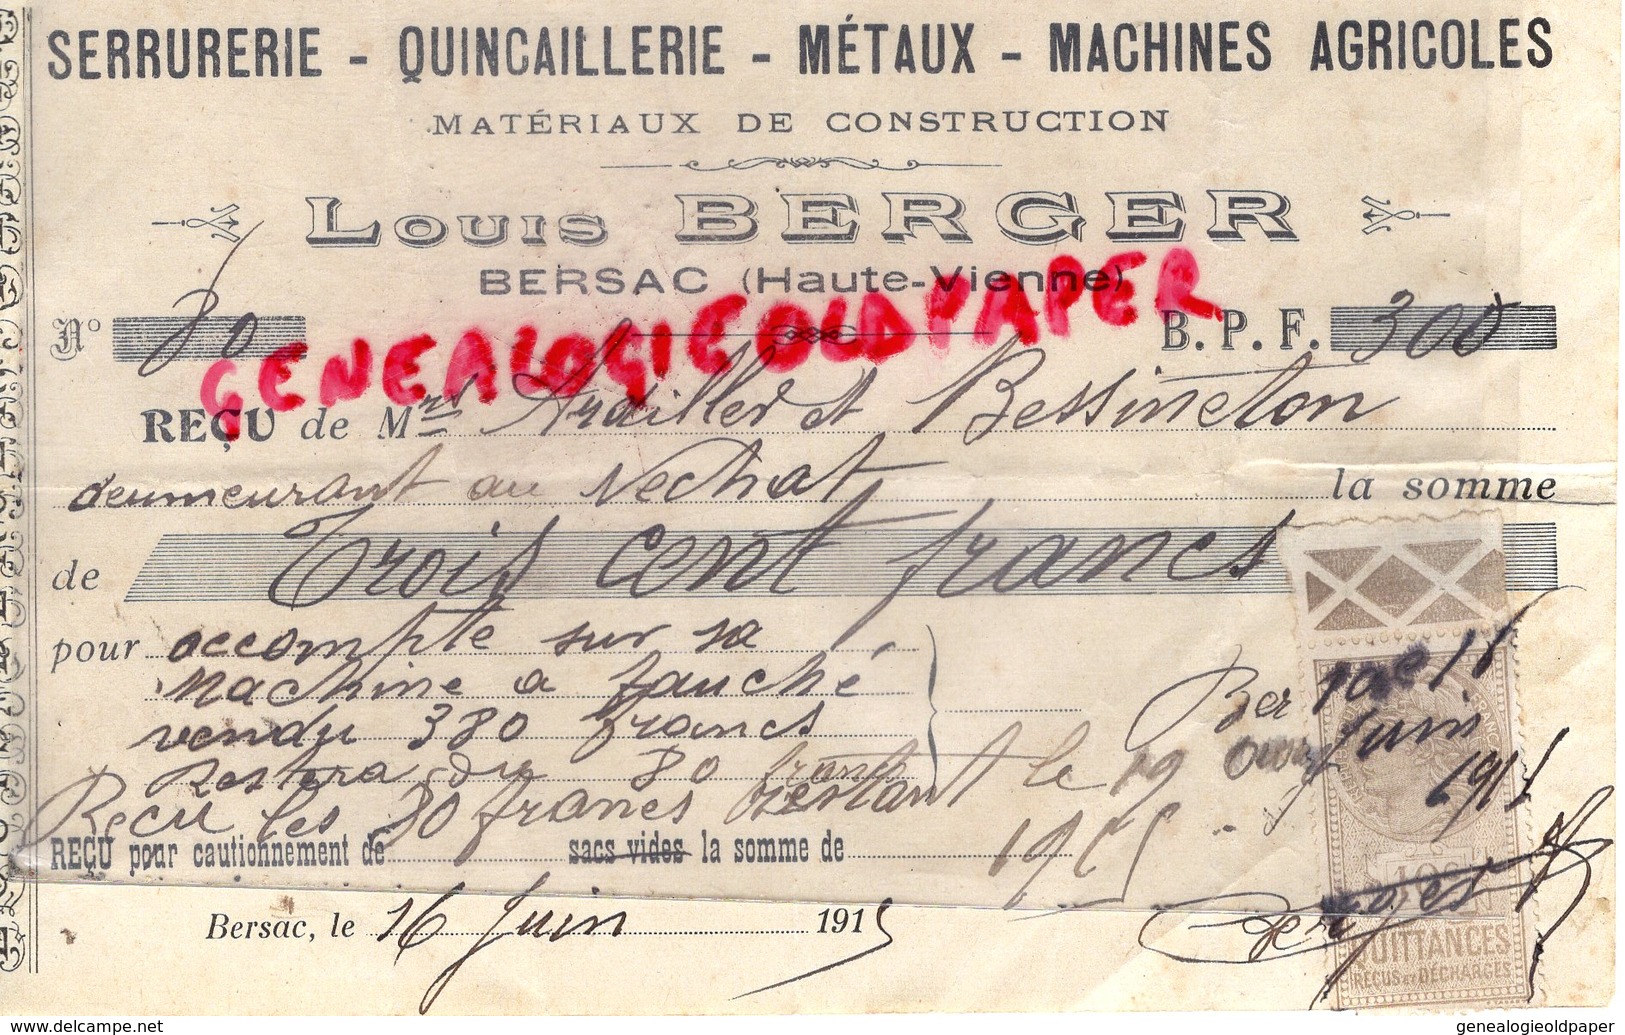 87 - BERSAC - RECU LOUIS BERGER- SERRURERIE QUINCAILLERIE MACHINES AGRICOLES- METAUX - 1925- ARDILLER ET BESSINETON - Old Professions